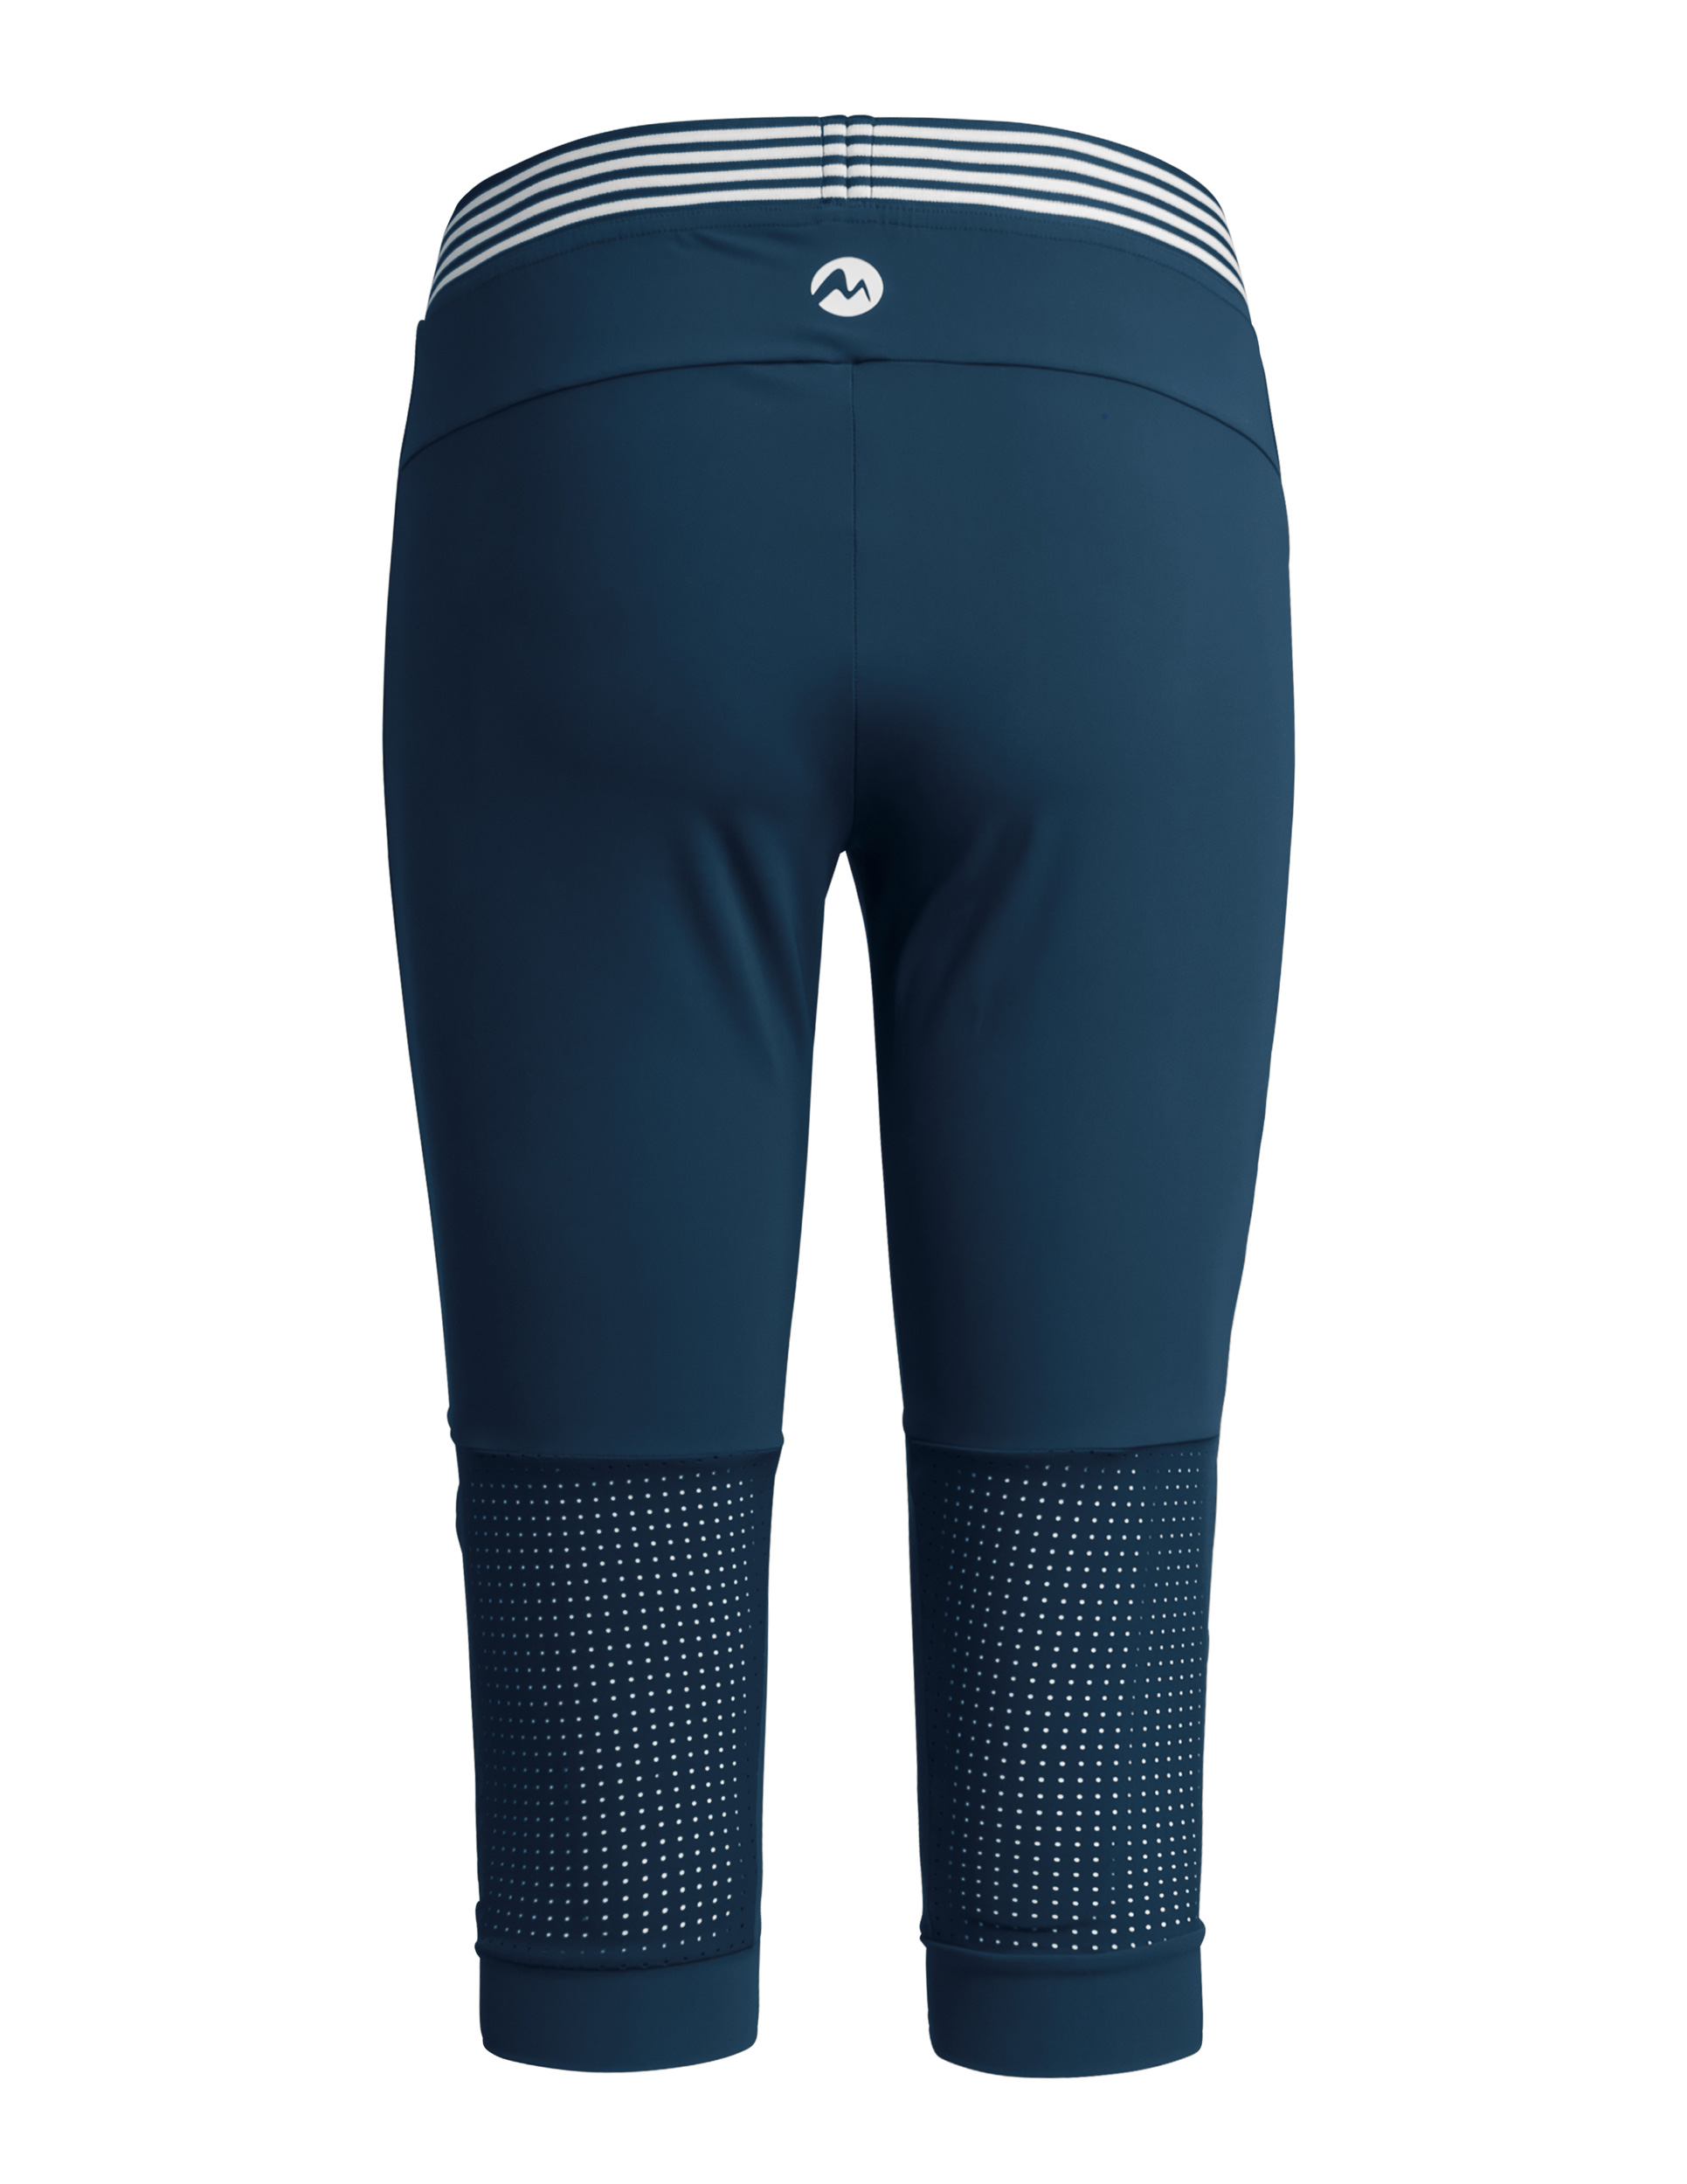 Martini Sportswear Presto - Shorts & 3/4-Hosen - Online kaufen bei Sport  Gardena